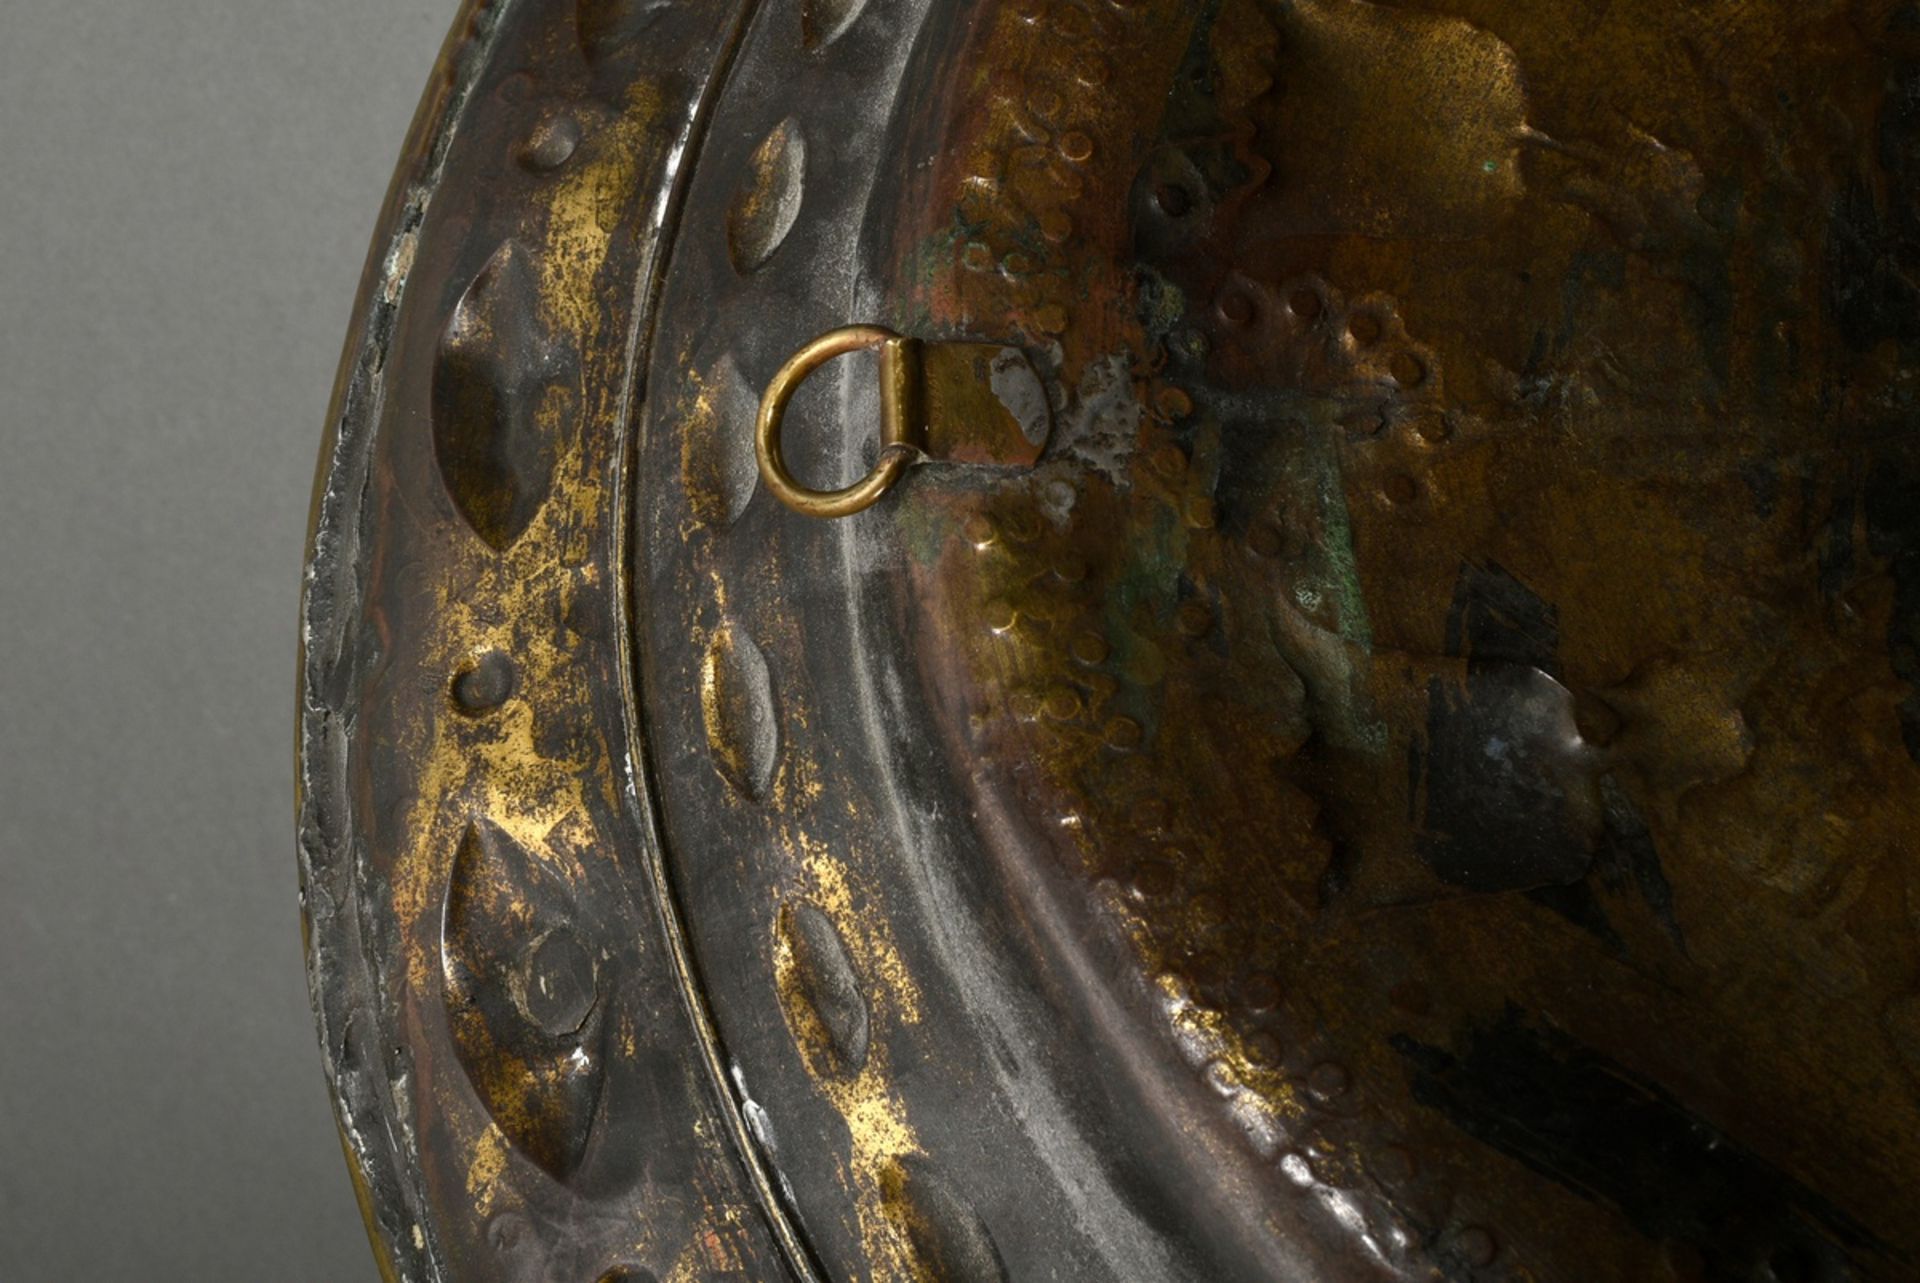 Große Messing Beckenschlägerschüssel mit getriebenem und ziseliertem Motiv im Spiegel "Blumenvase", - Bild 3 aus 5